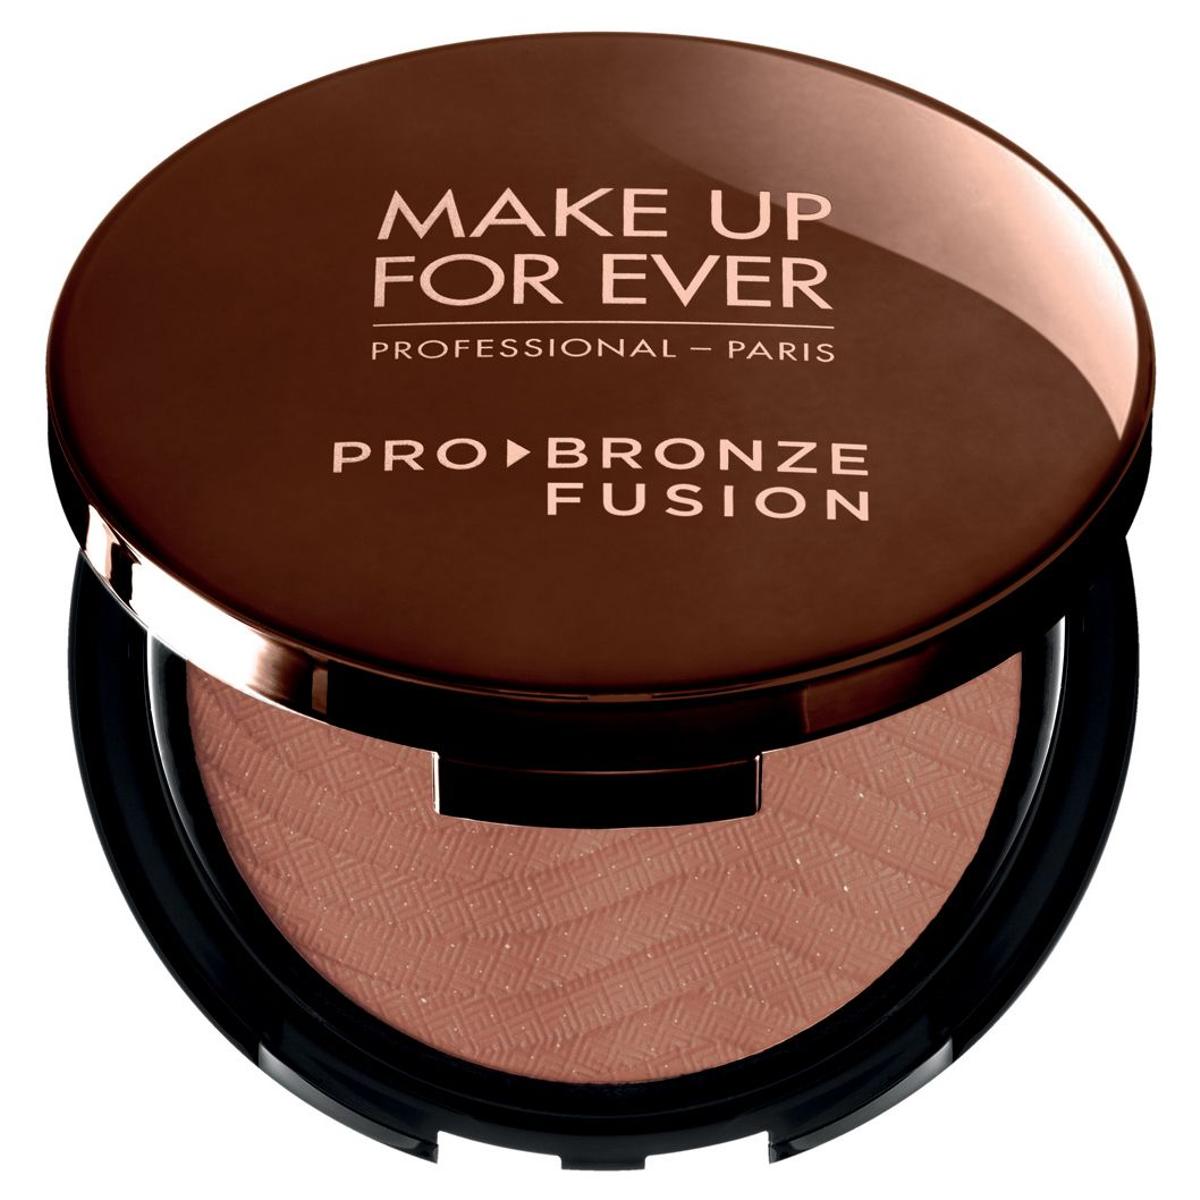 Polvos de sol para presumir de moreno: Pro Bronze Fusion, de Make Up Forever (40,50 euros).